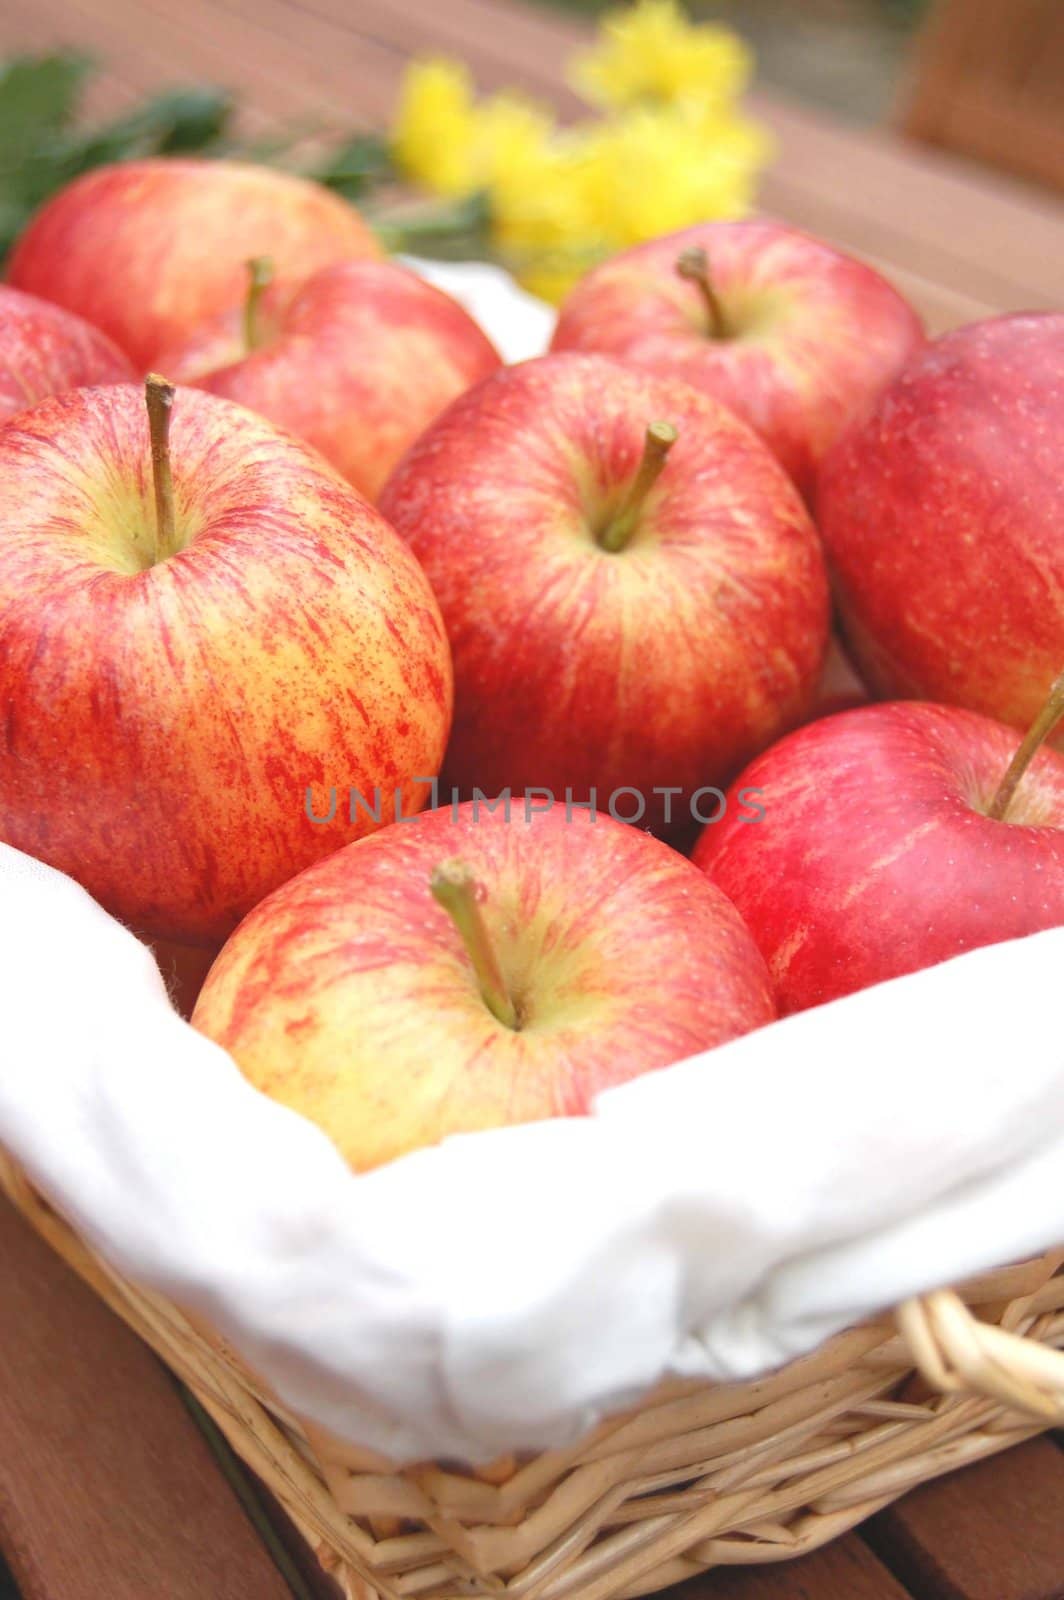 Full basket of red apples